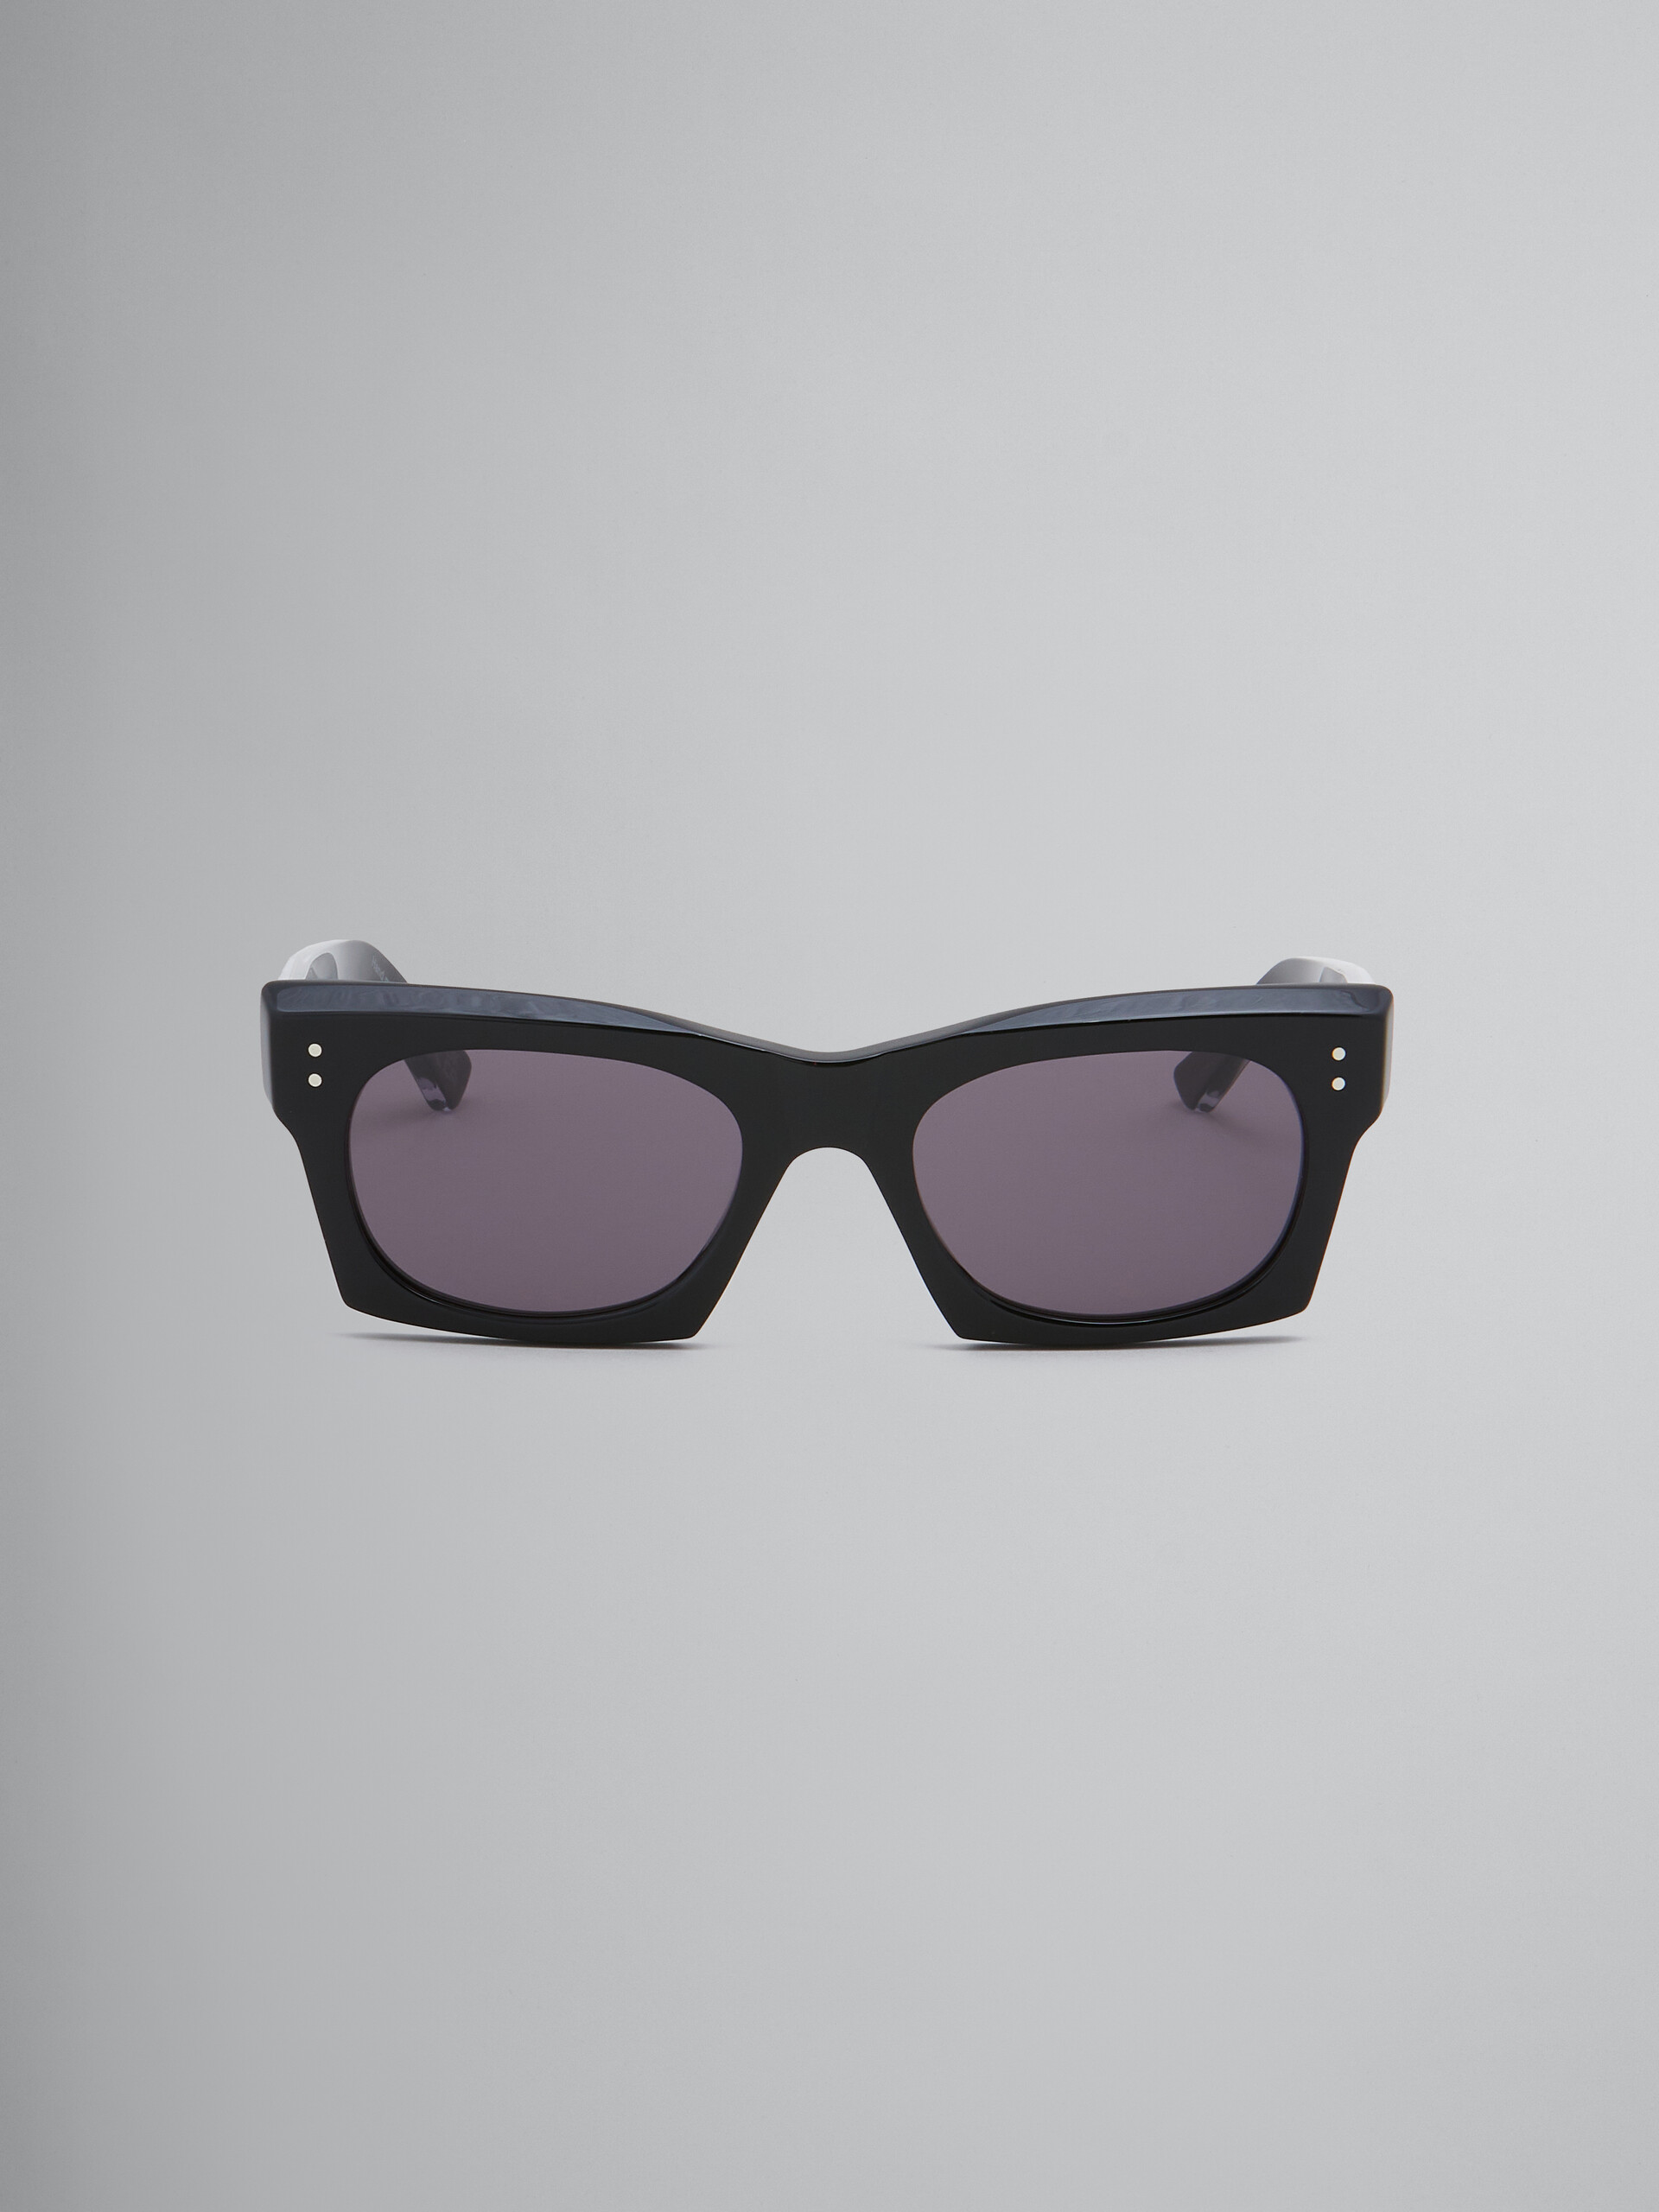 Schwarze Sonnenbrille Edku - Optisch - Image 1